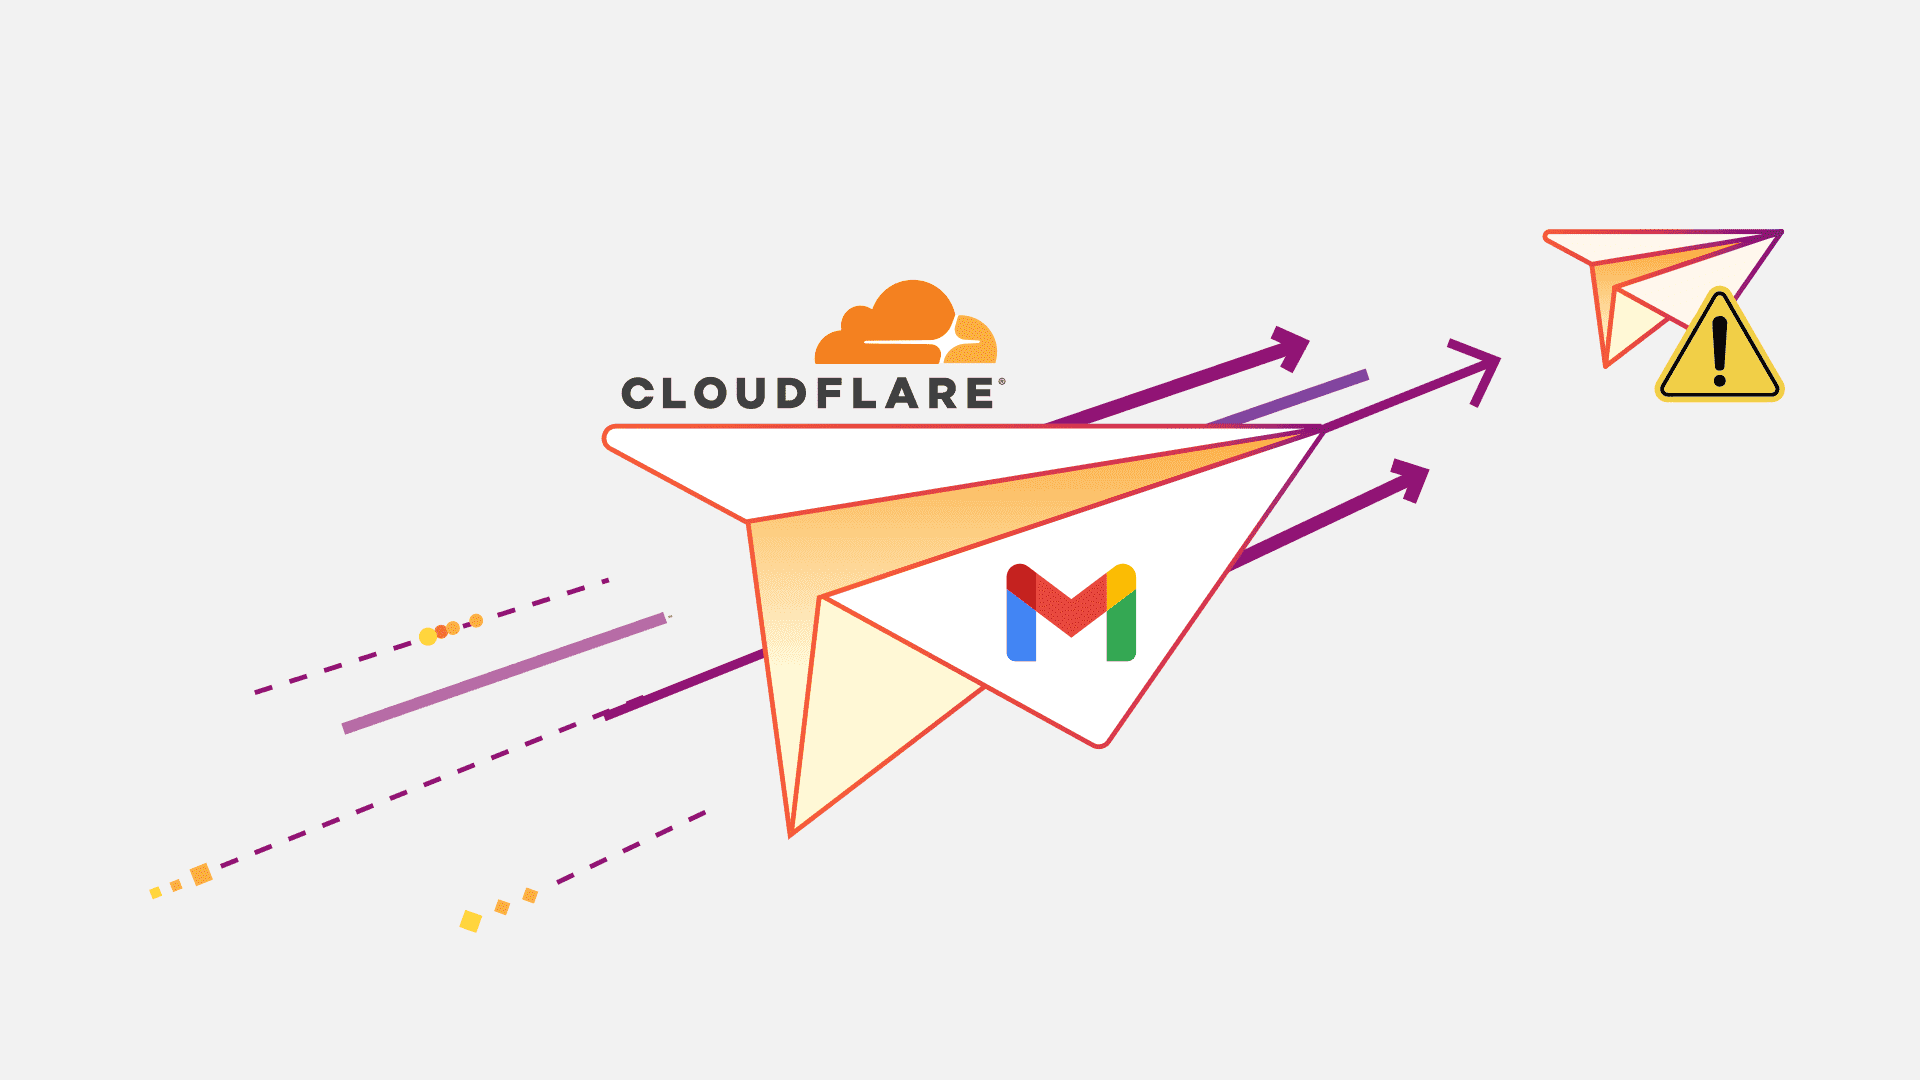 Kiedy wszystko zaczyna się walić... dodanie alternatywnego routingu do Cloudflare Email Routing przy pomocy Email Workers